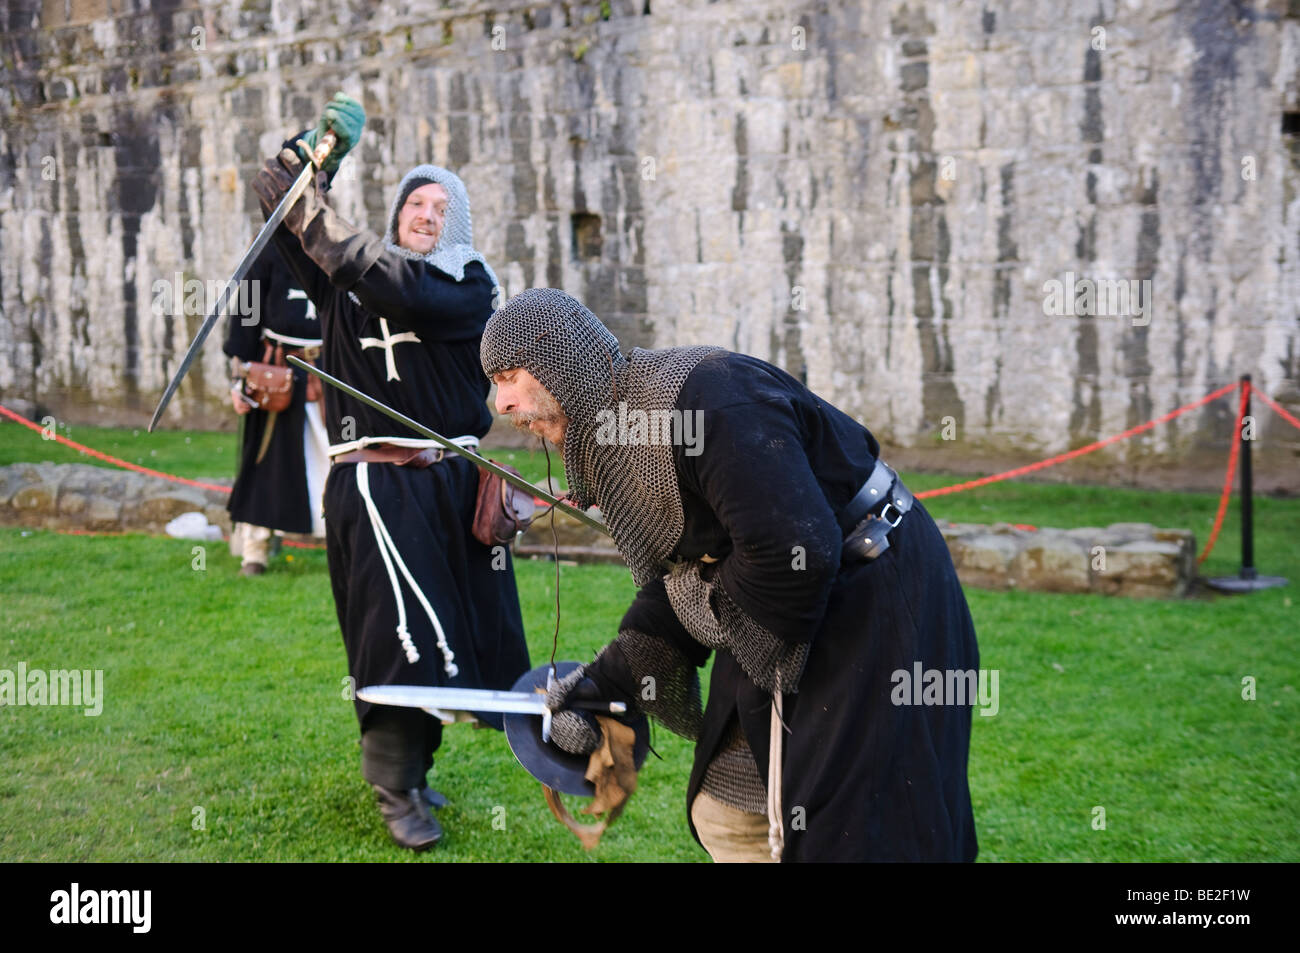 Acteurs adopter de nouveau une épée médiévale Banque D'Images